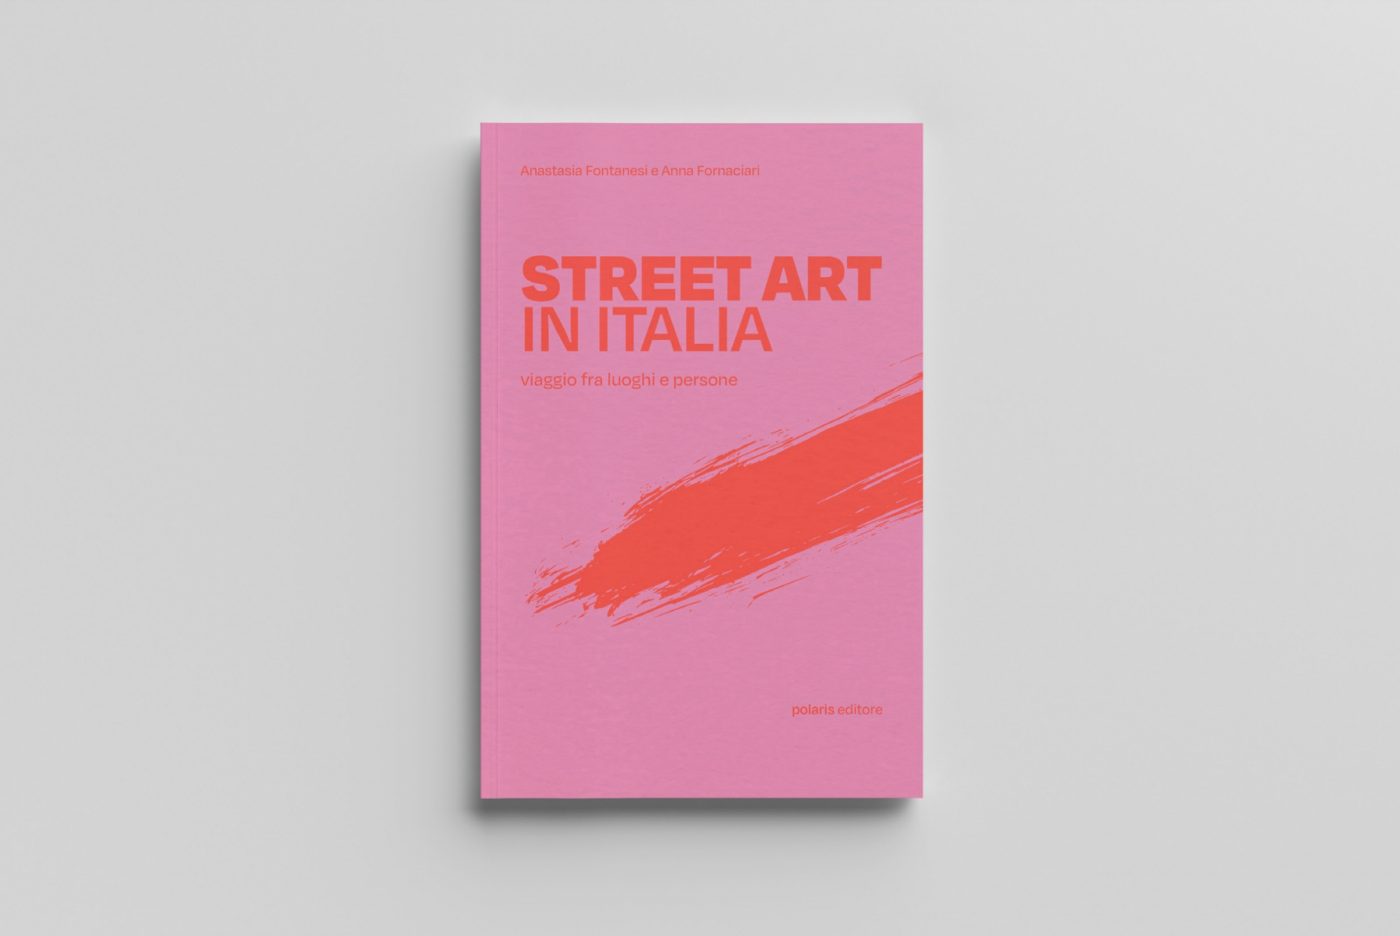 Street art in Italia. Viaggio fra luoghi e persone la guida di Anna Fornaciari e Anastasia Fontanesi